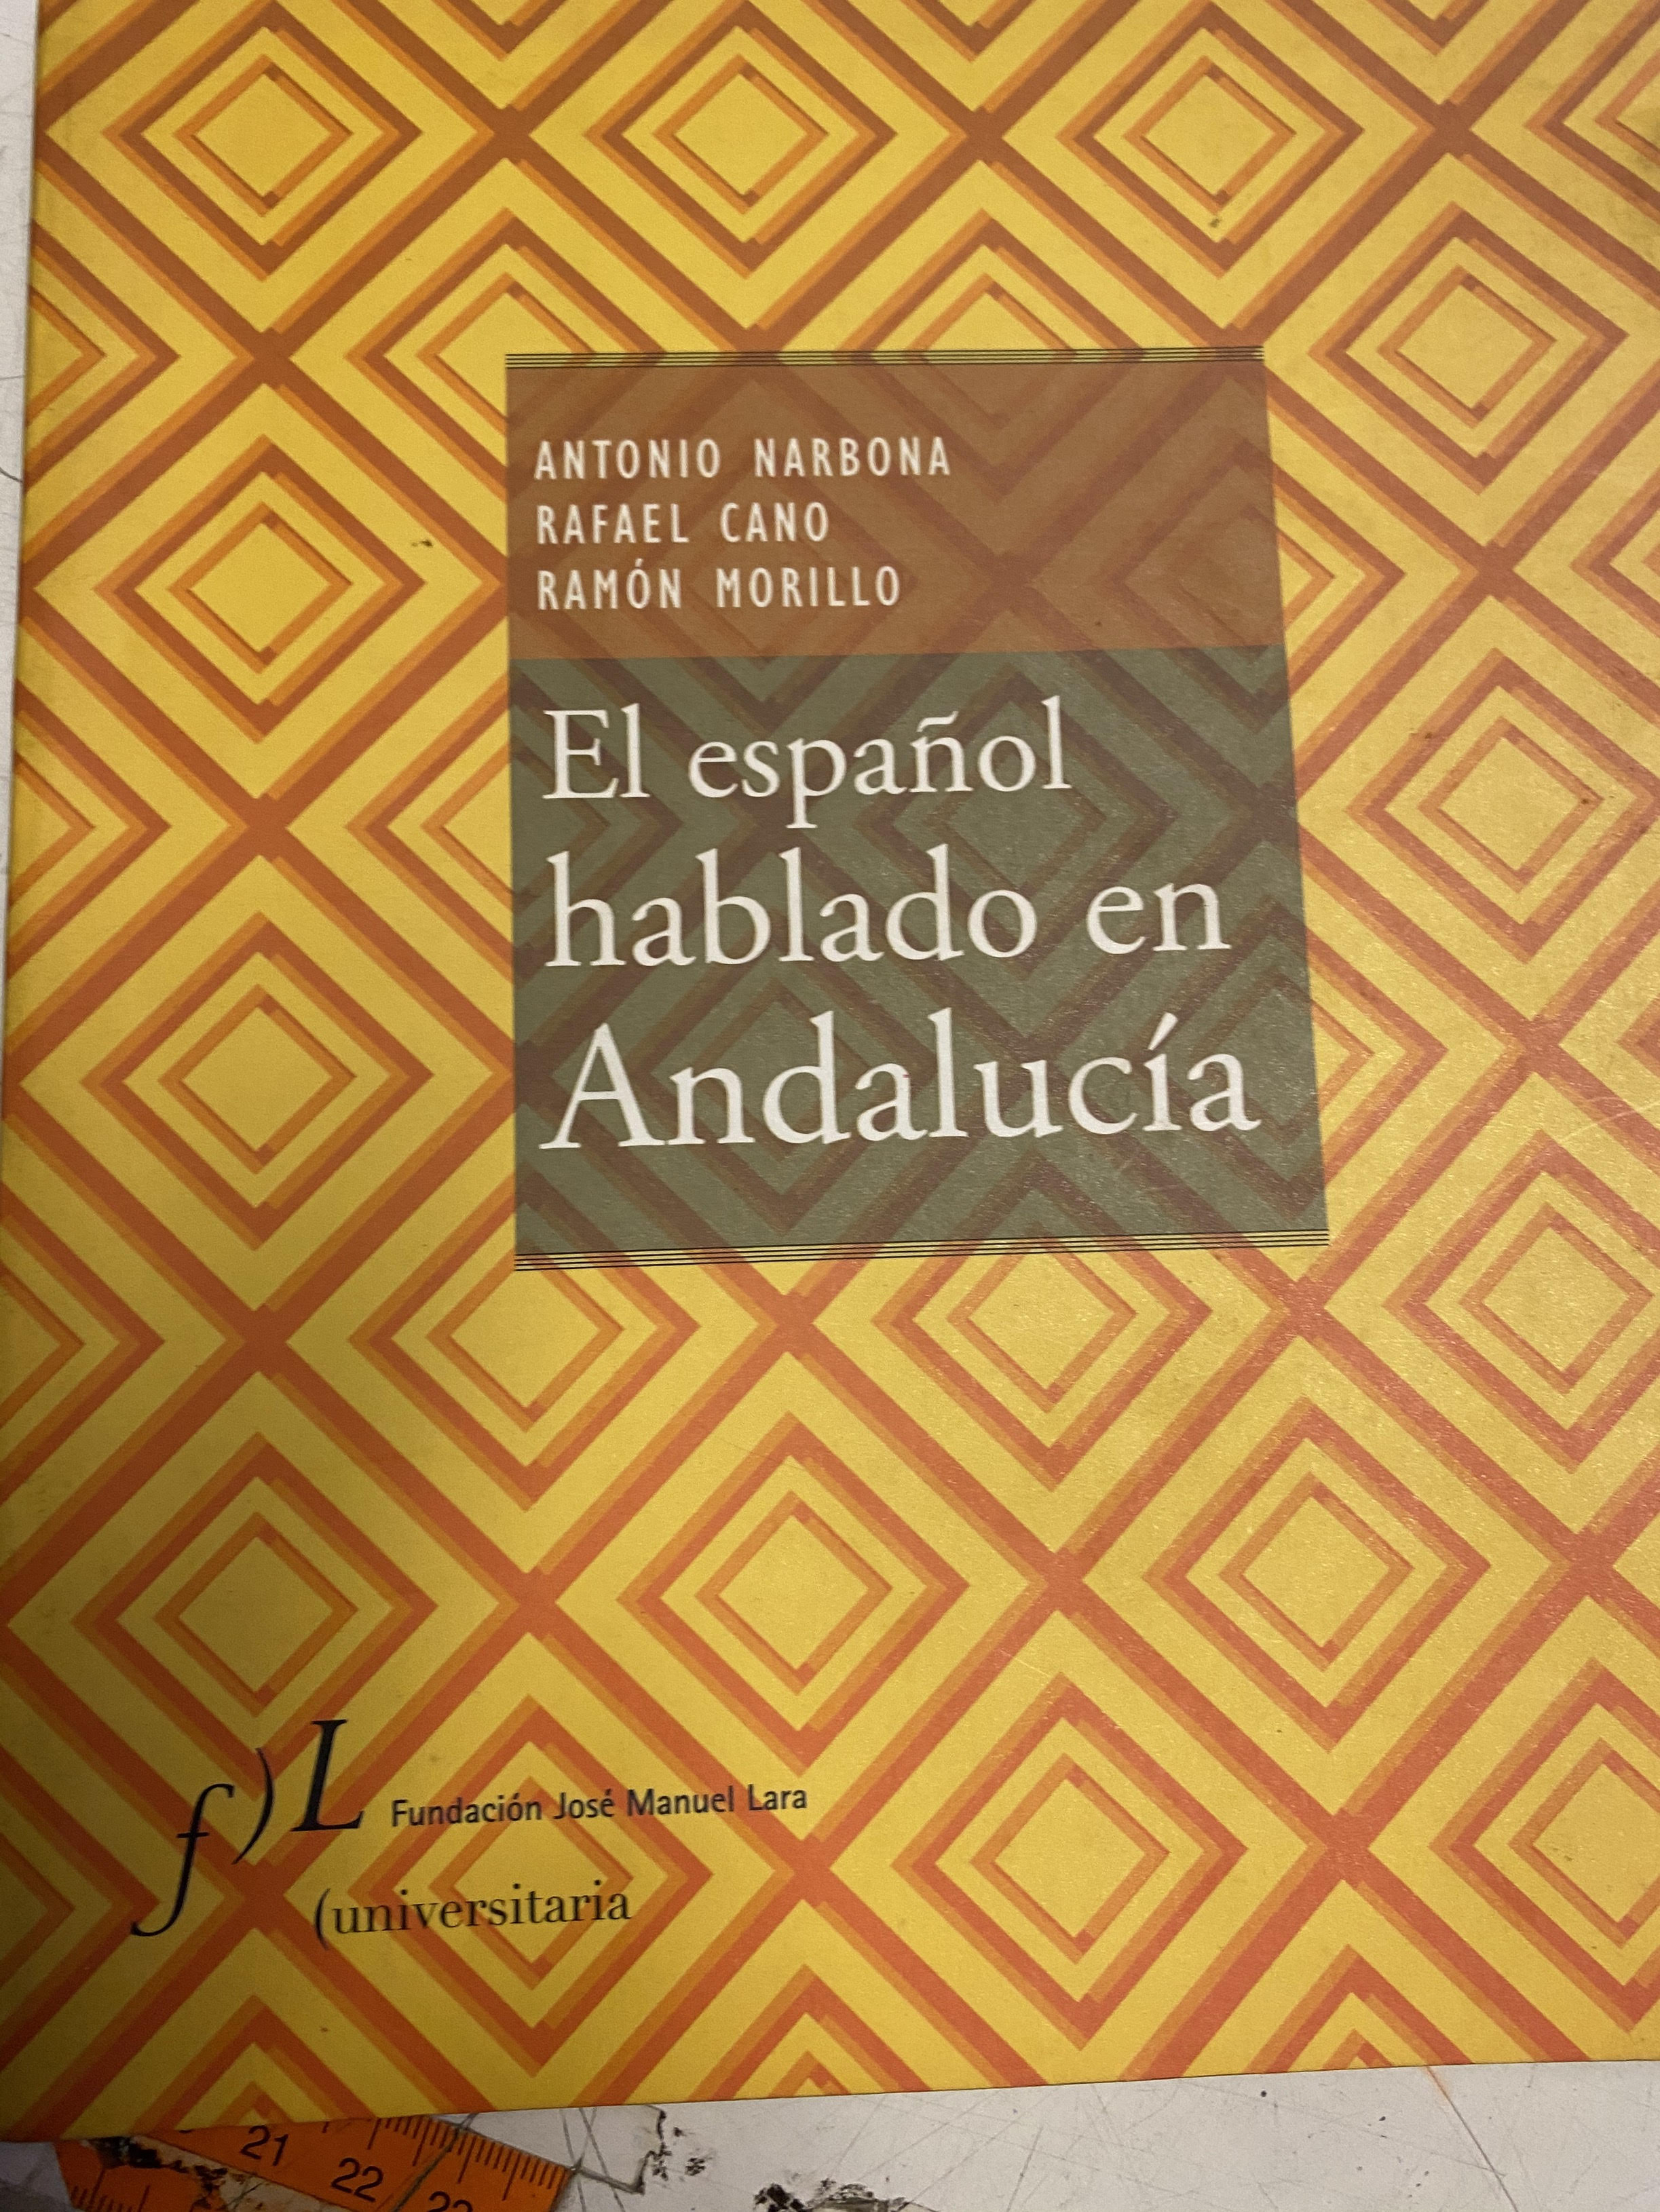 EL ESPAÑOL HABLADO EN ANDALUCIA. - NARBONA / CANO / MORILLO, Antonio / Rafael / Ramon.